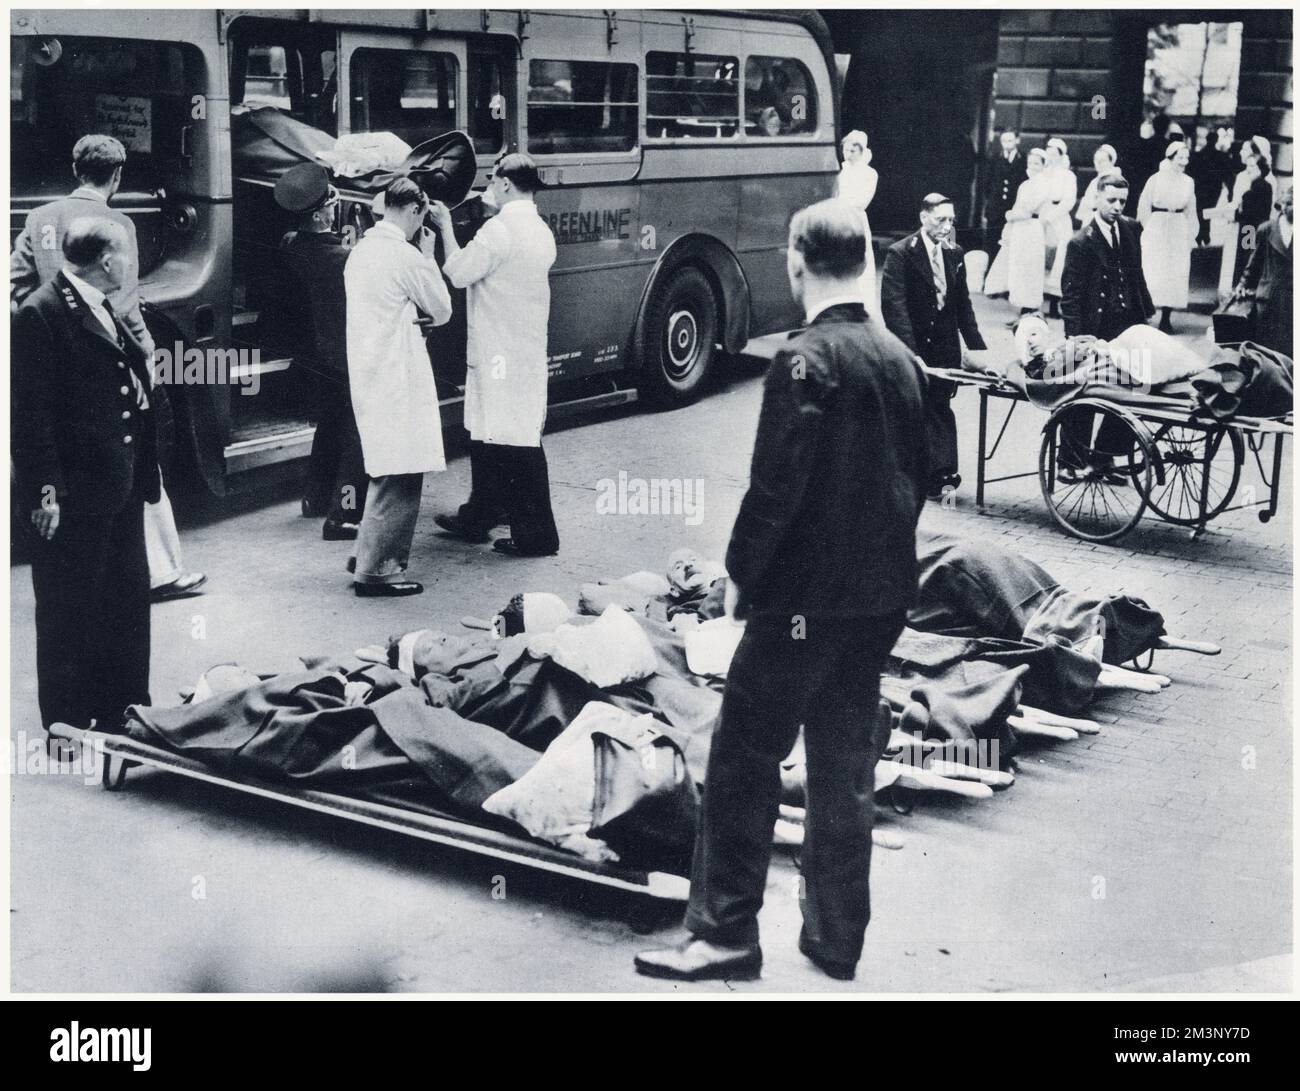 Evakuierung von Krankenhauspatienten aus einem Londoner Krankenhaus zu Beginn des Zweiten Weltkriegs. Für die Evakuierung von Patienten ins Land wurden Reisebusse vorübergehend in Krankenwagen umgewandelt. Stockfoto